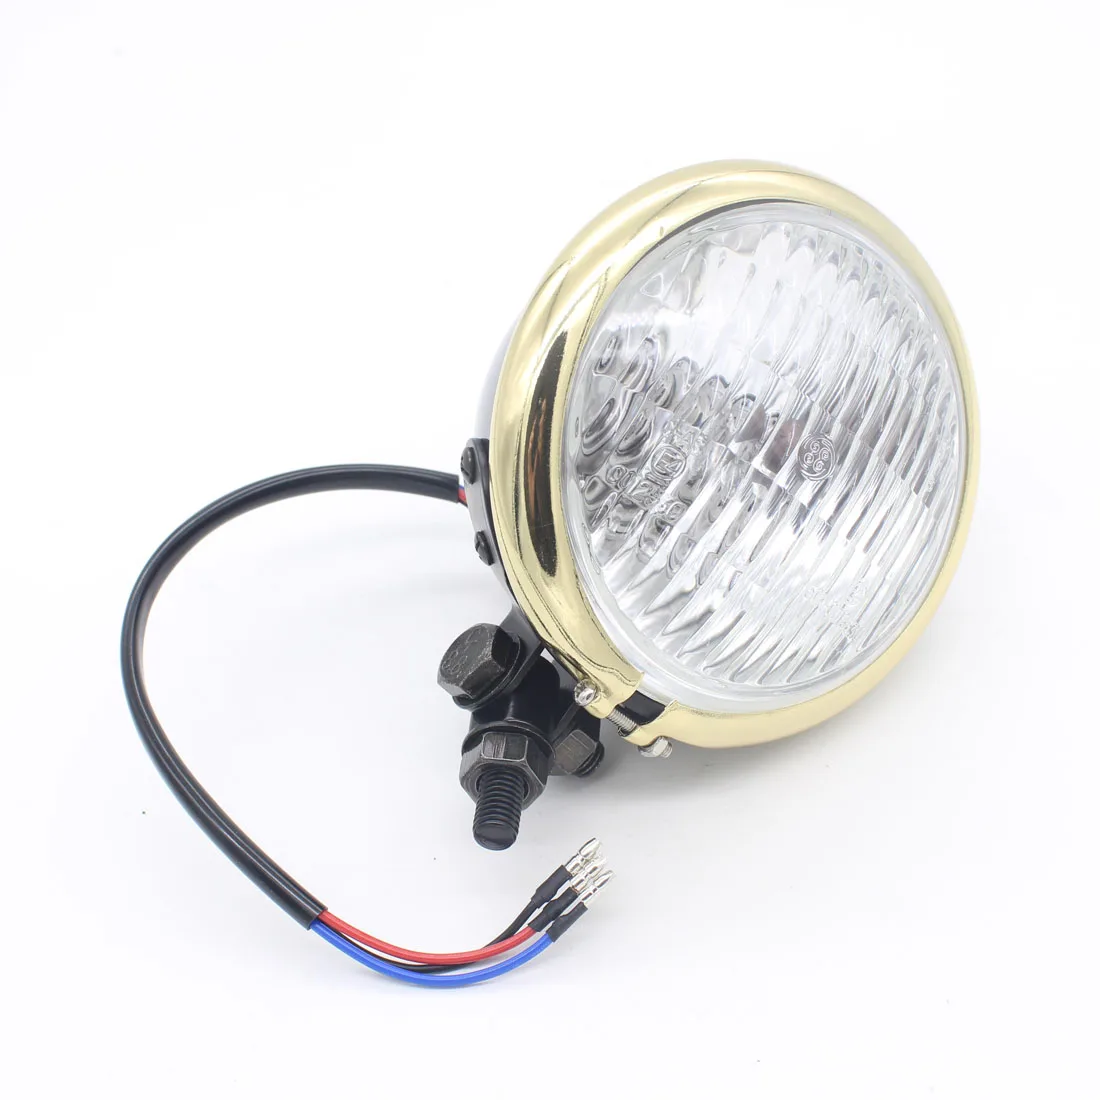 

Dongzhen Motor Hood Scoop Chrome Bullet Motorcycle LED Headlight Driving Light Fog Light Source for Harley Xenon Lamp